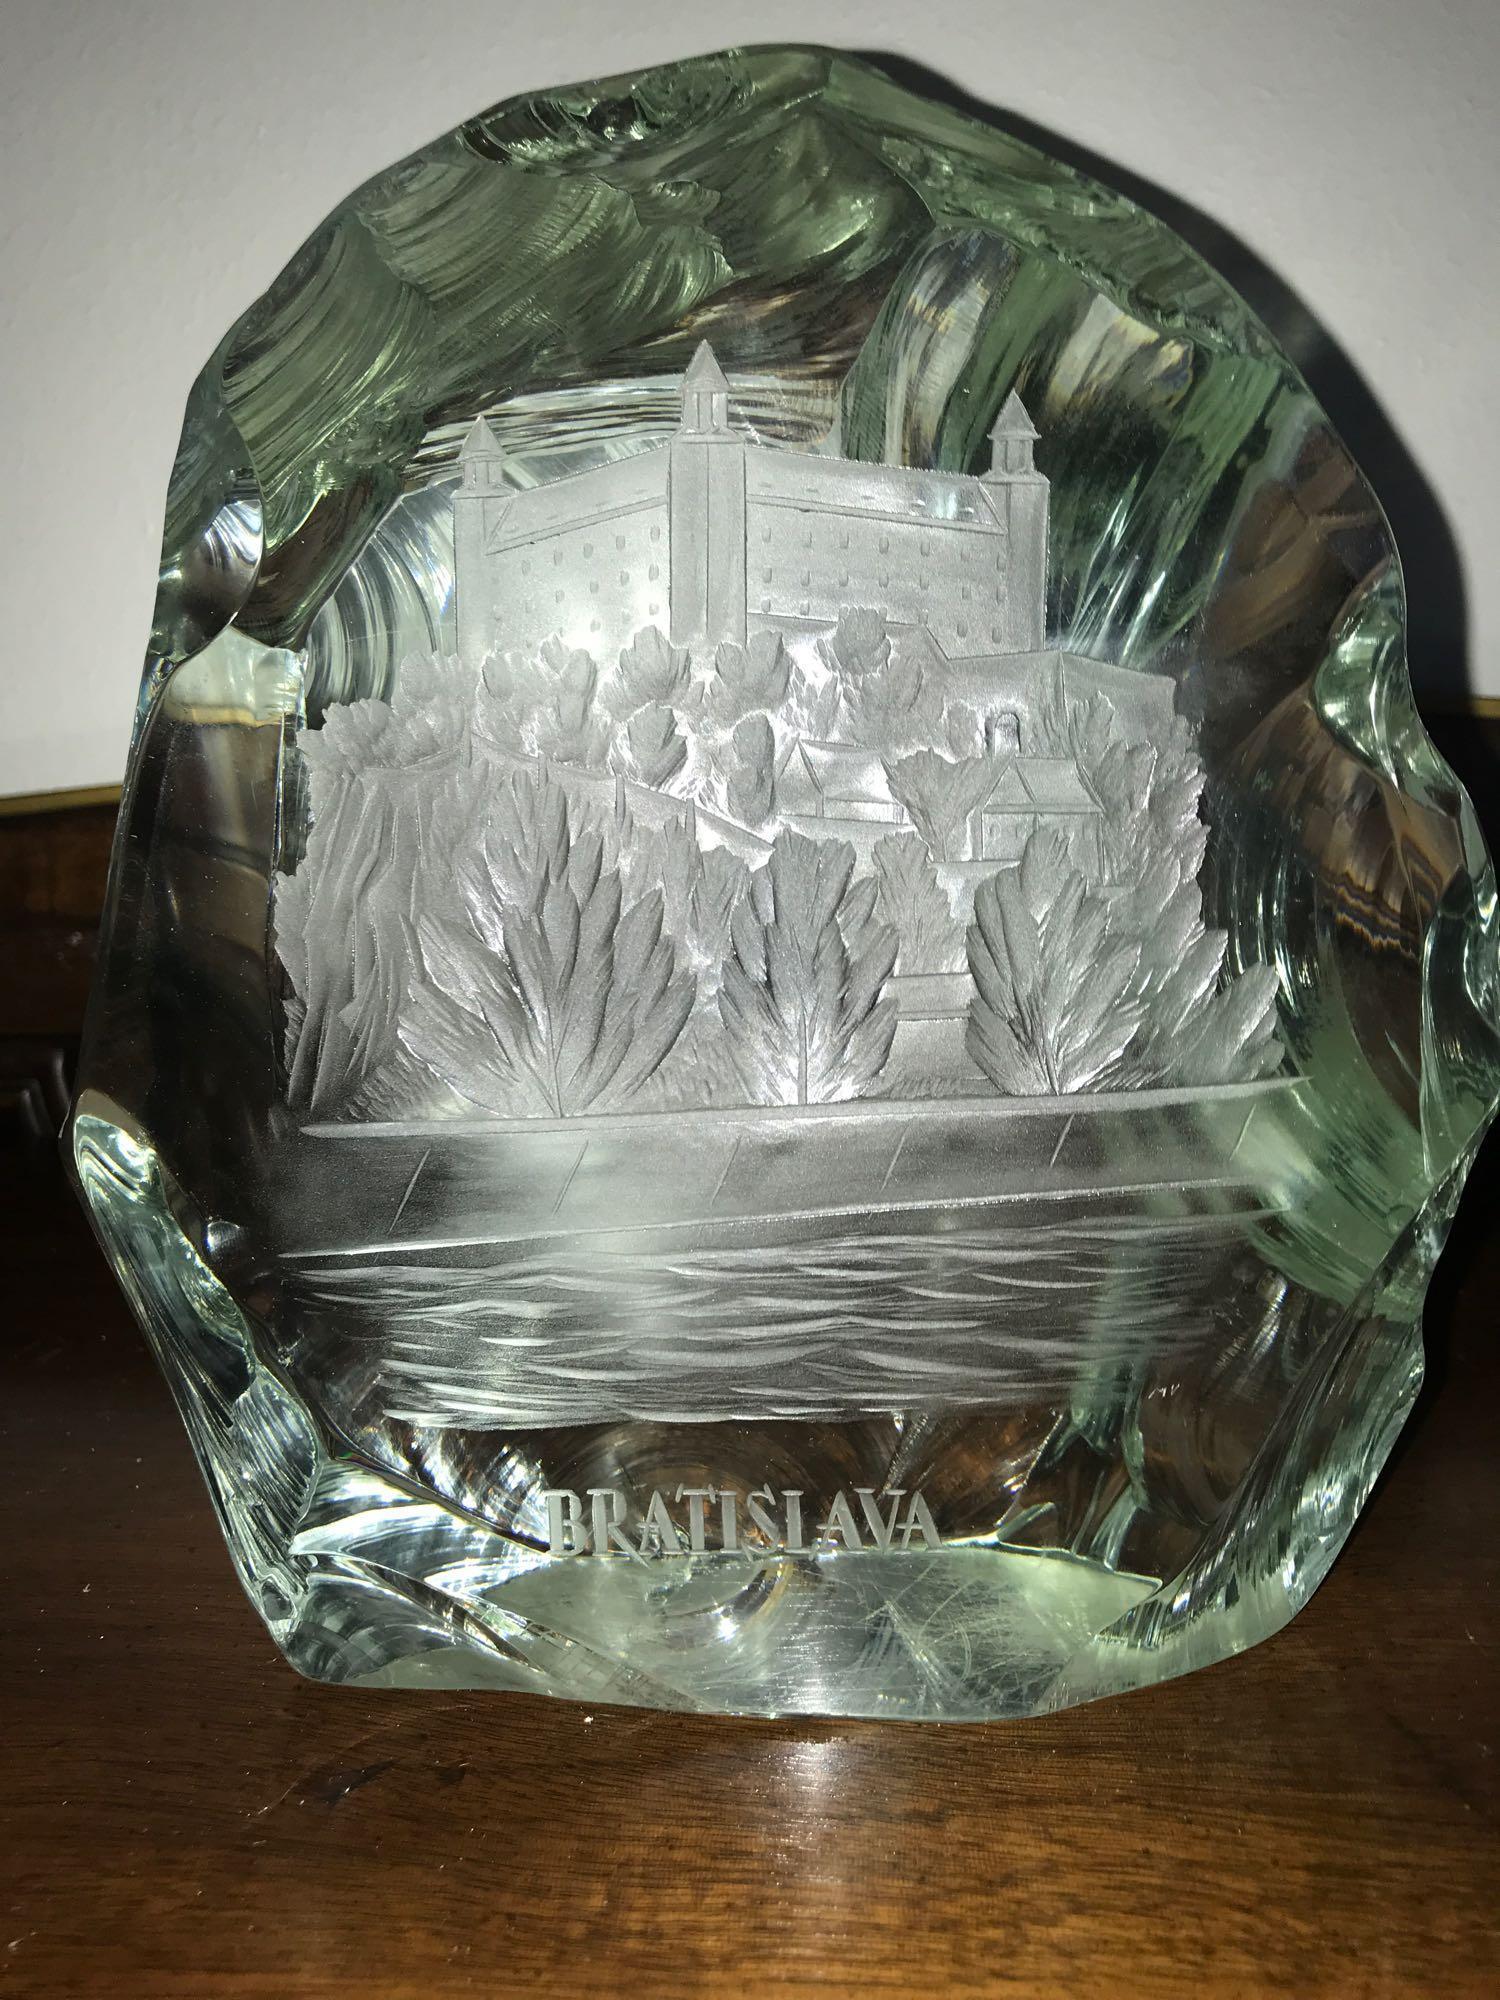 Bratislava volcanic glass decorative piece